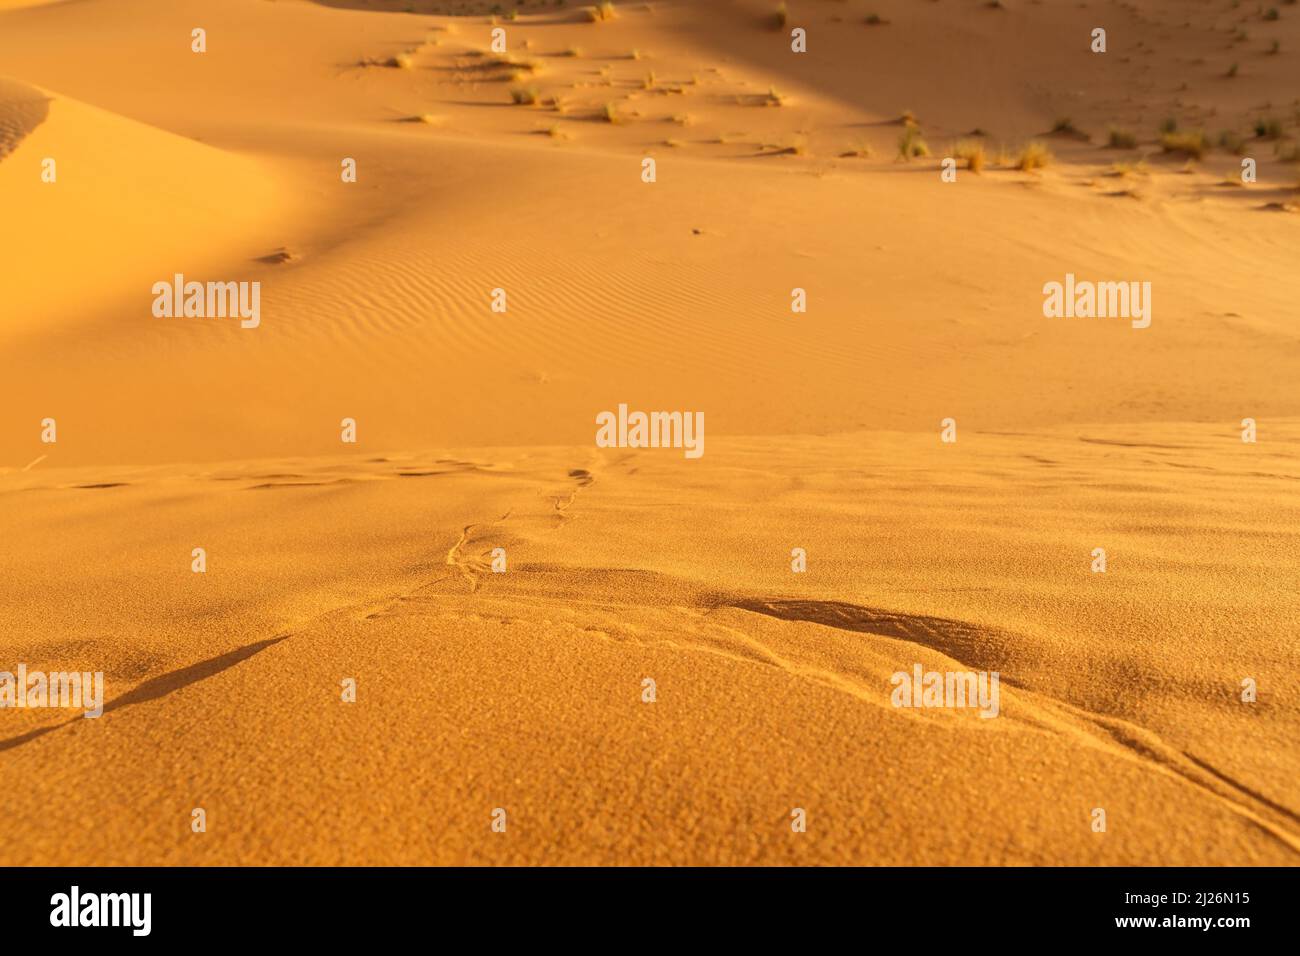 Sand dunes in the desert. detail of sand dunes Stock Photo